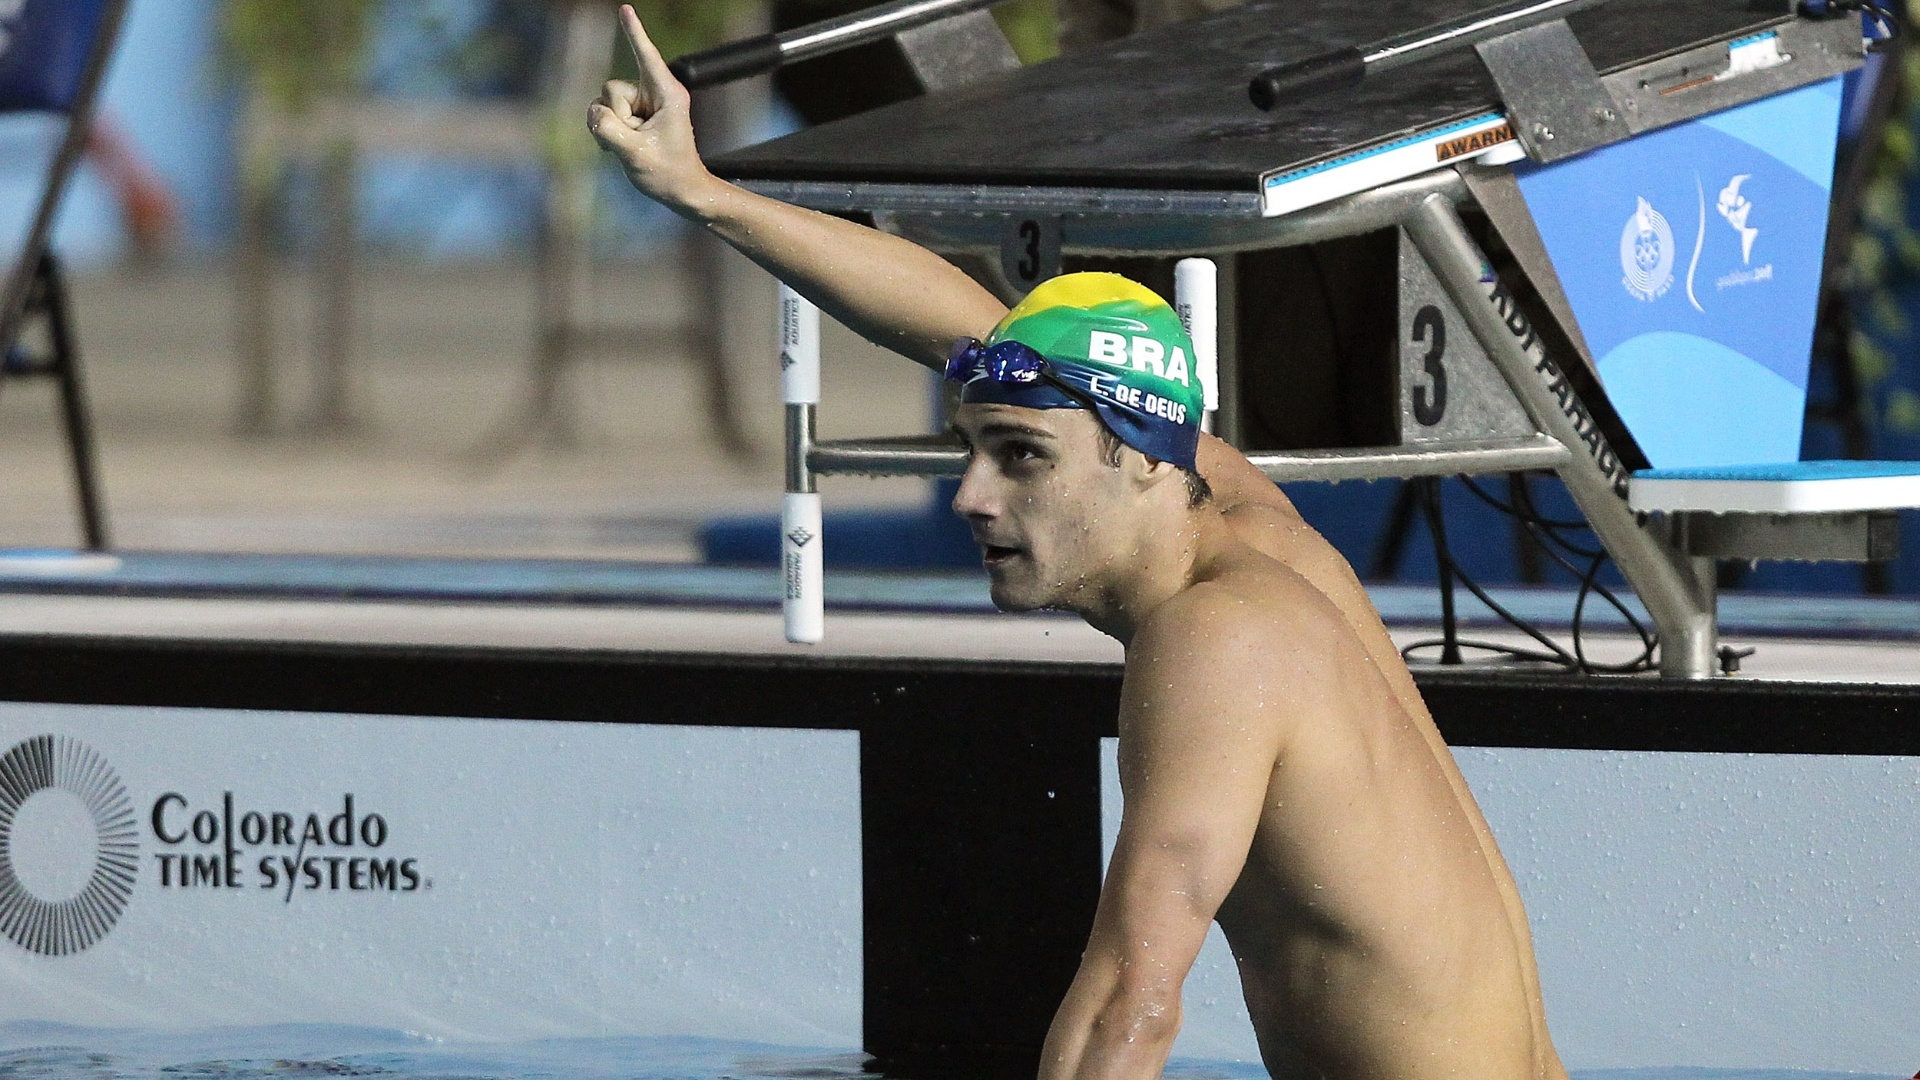 Ainda na água, o nadador Leonardo de Deus comemora a vitória nos 200 m borboleta, sem saber de sua desqualificação